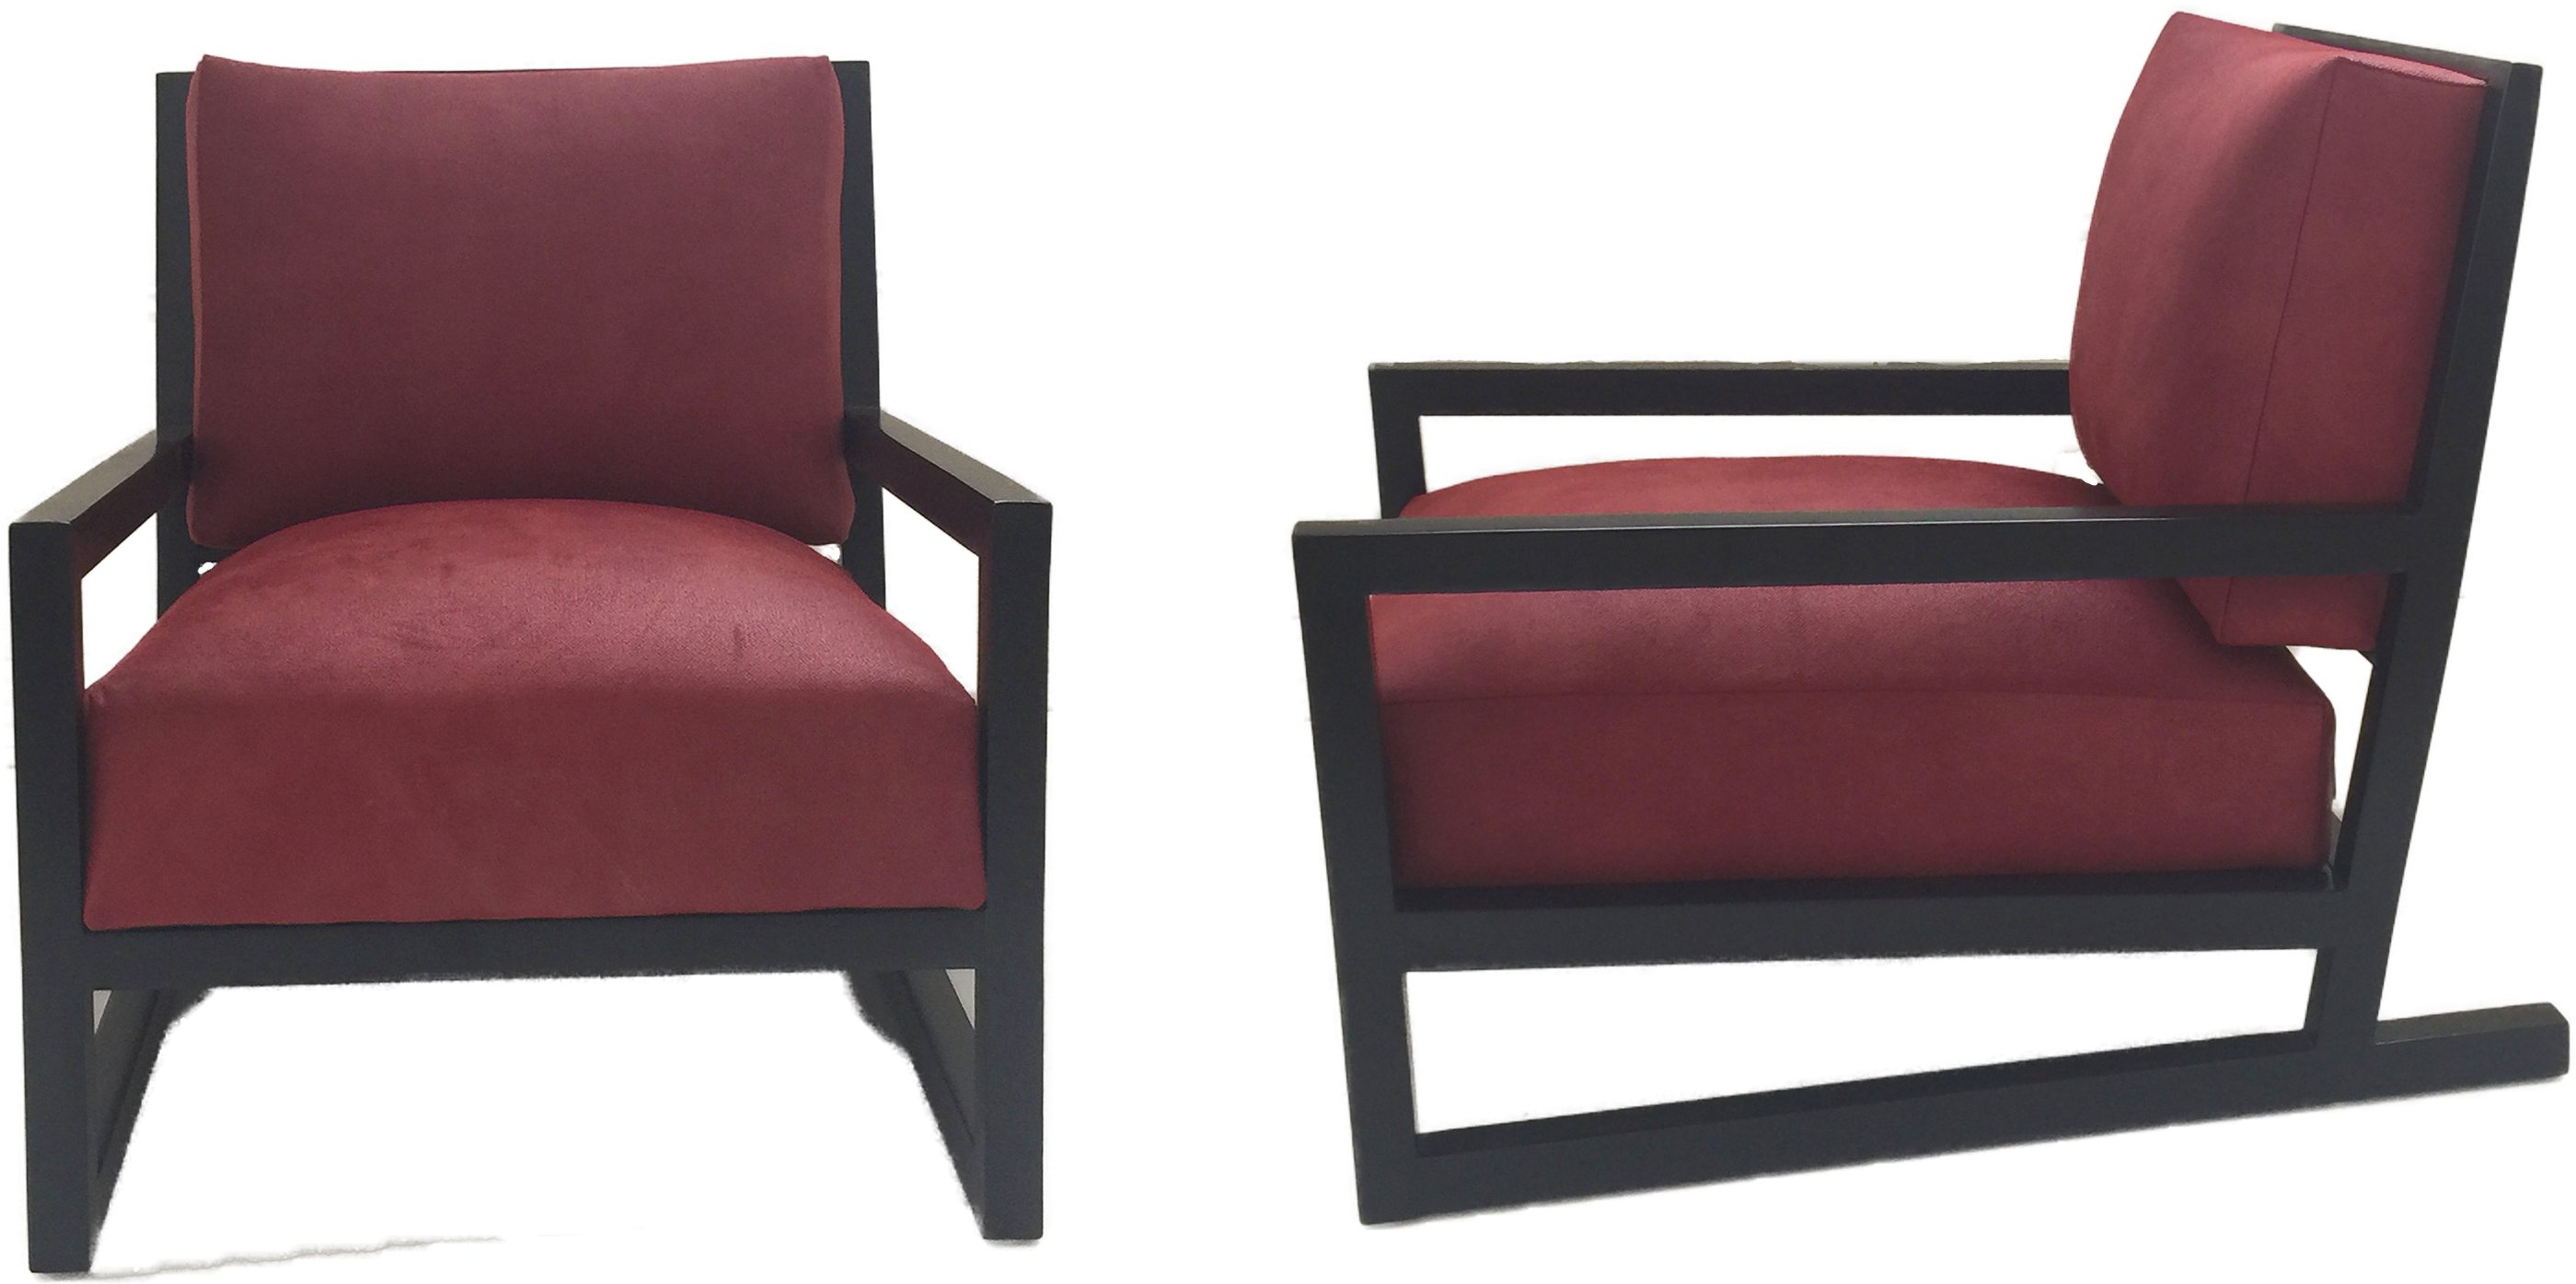 Modern Red Club Chair Design